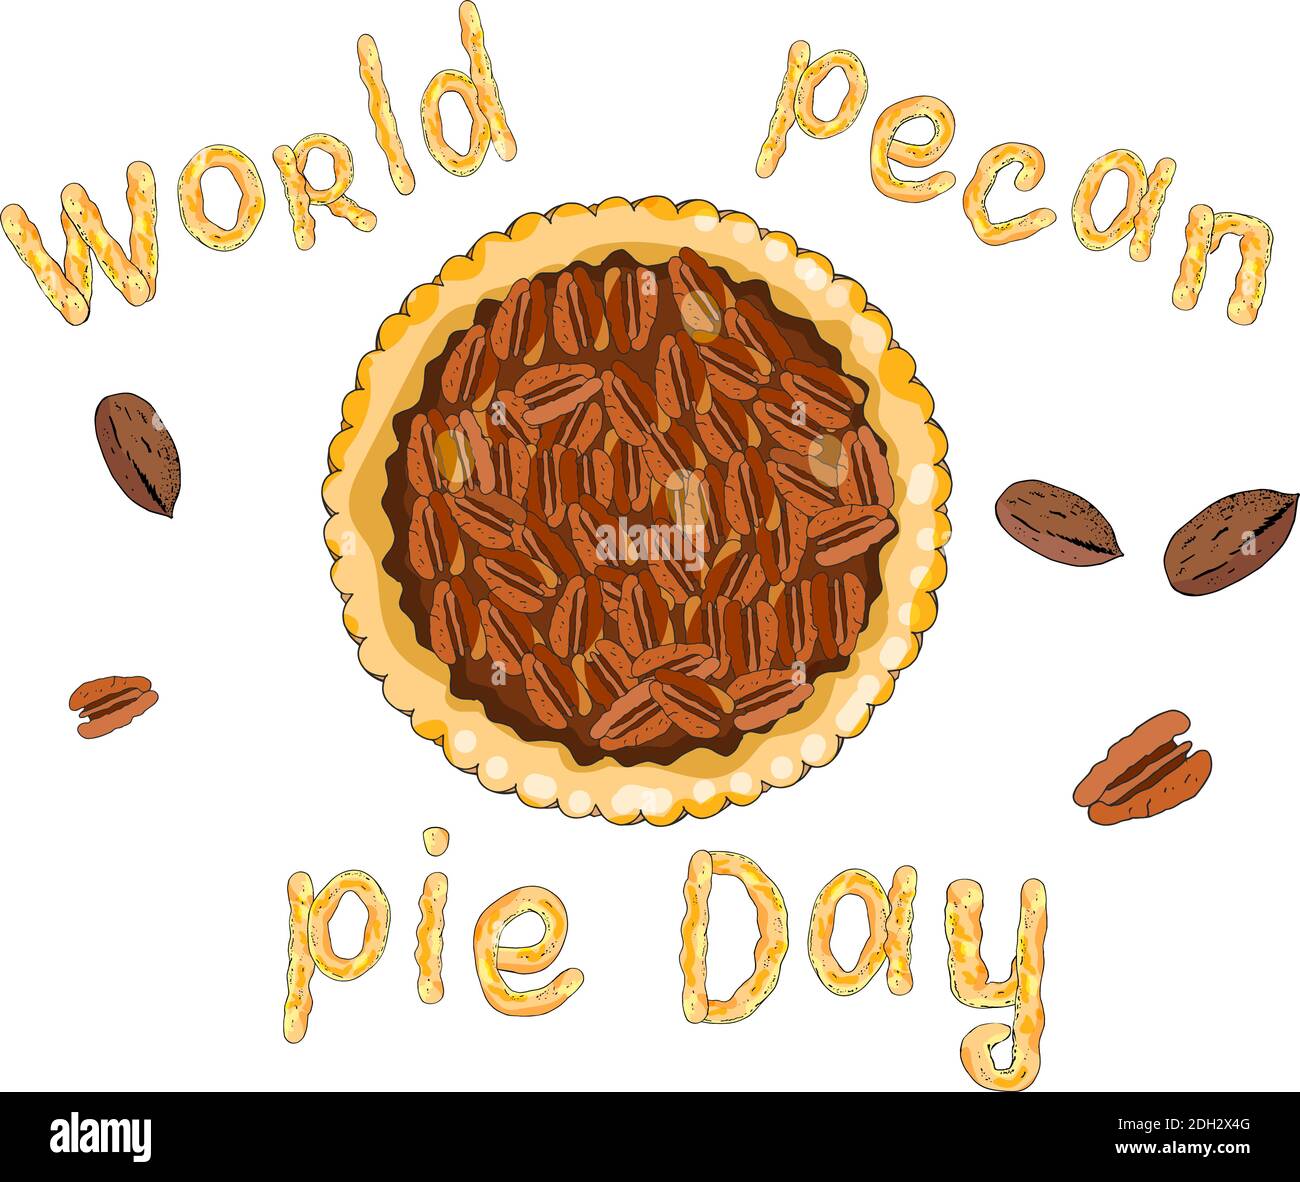 Pecan Pie Day. Das Thema Herbst, Tortentag, Ernte und Danksagung. Stock Vektor